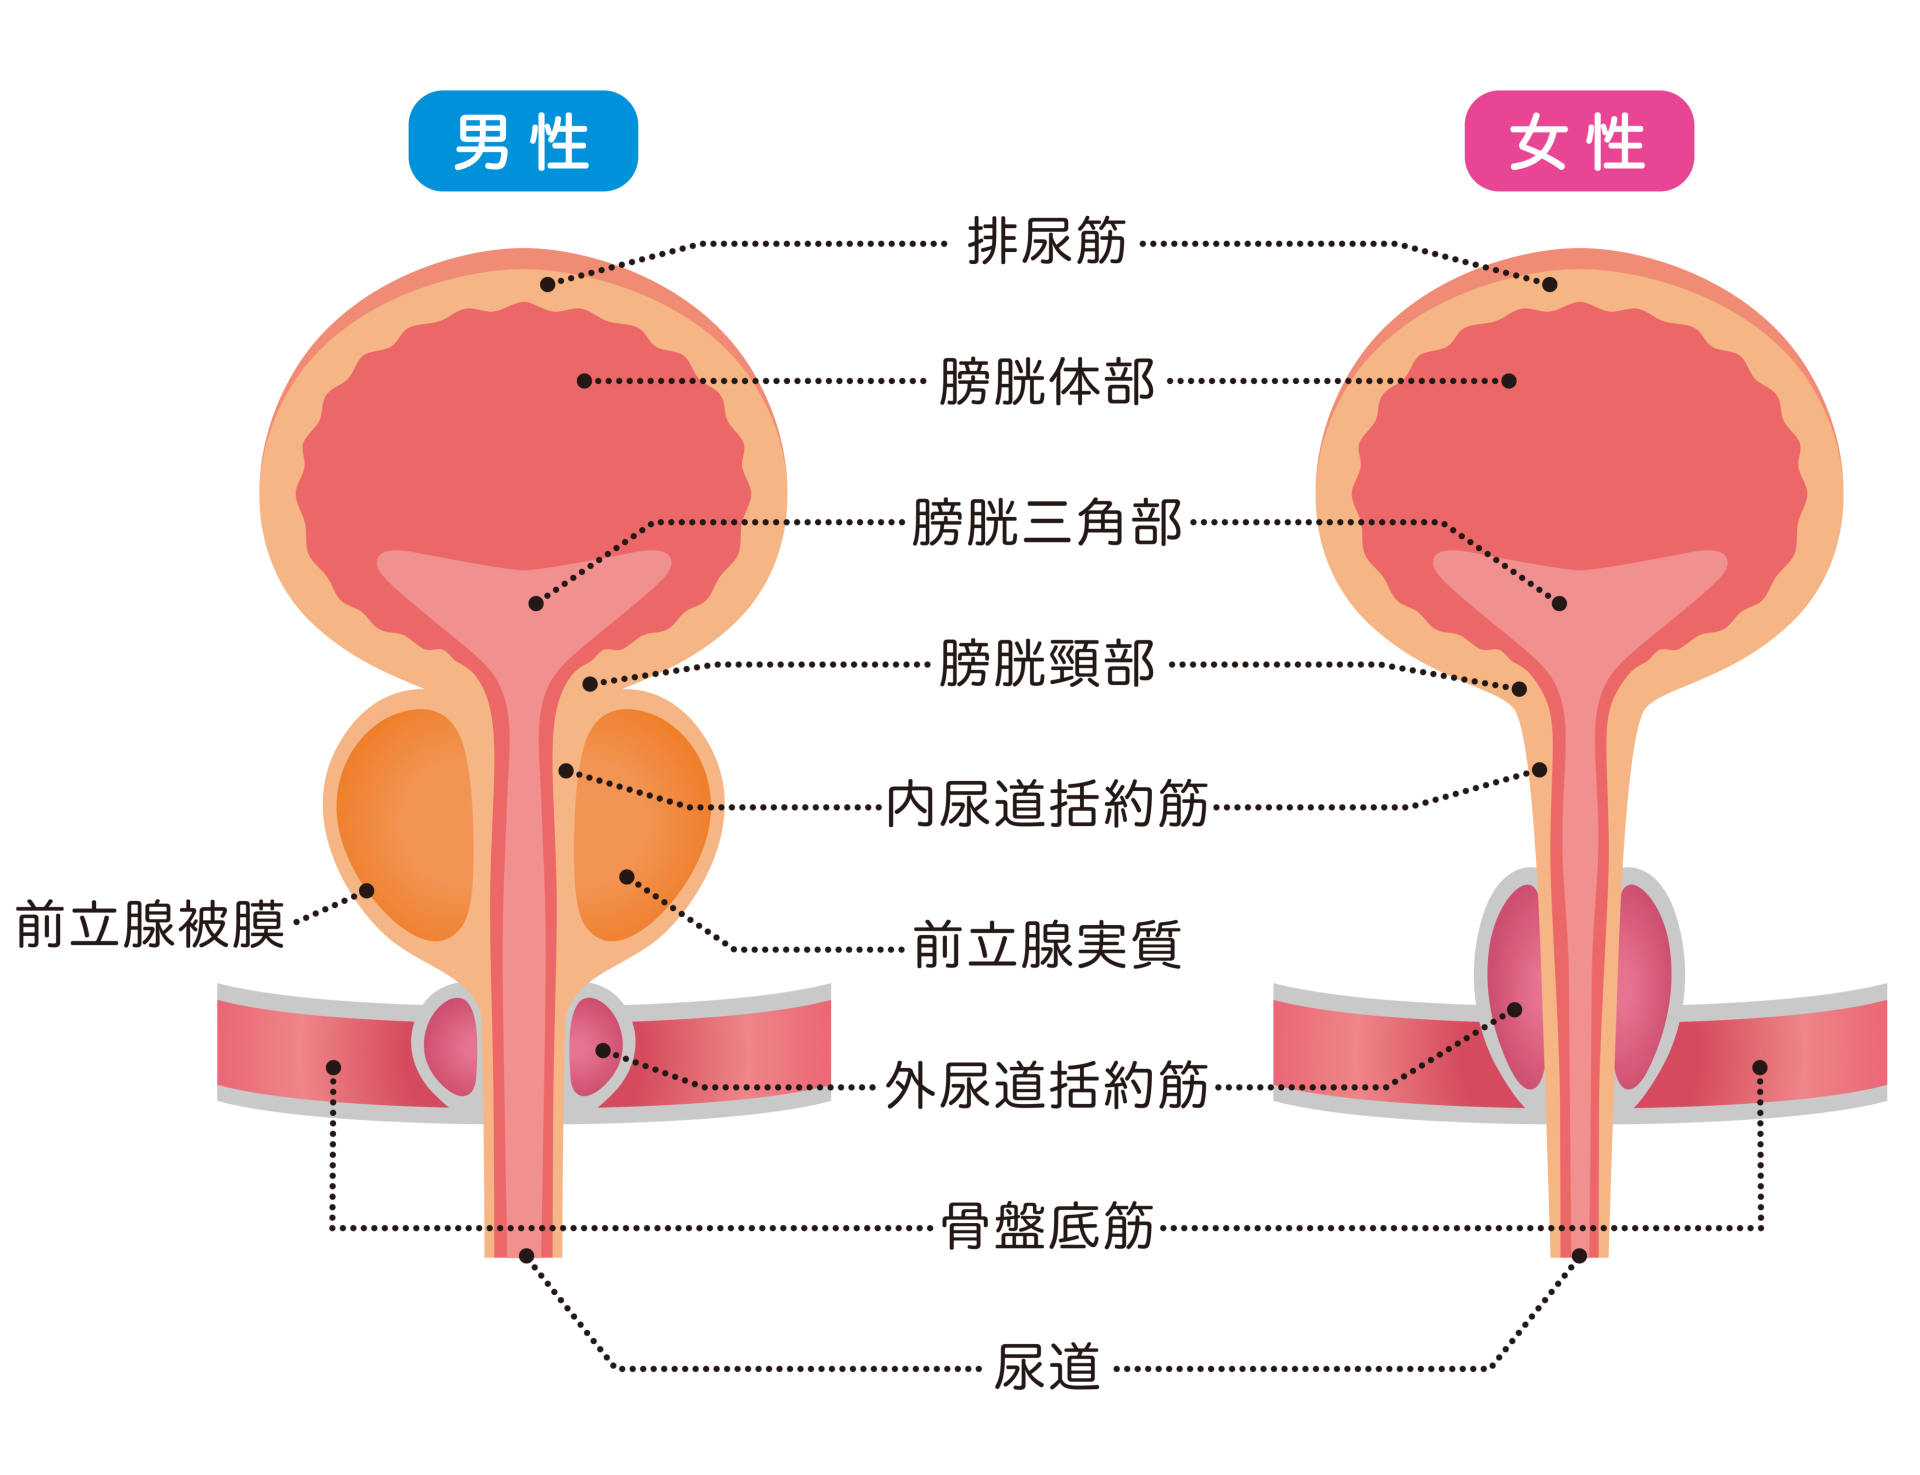 慢性期医療における排尿障害と不必要な尿道カテーテル留置による問題 良質な慢性期医療が日本を強くする 慢性期 Com